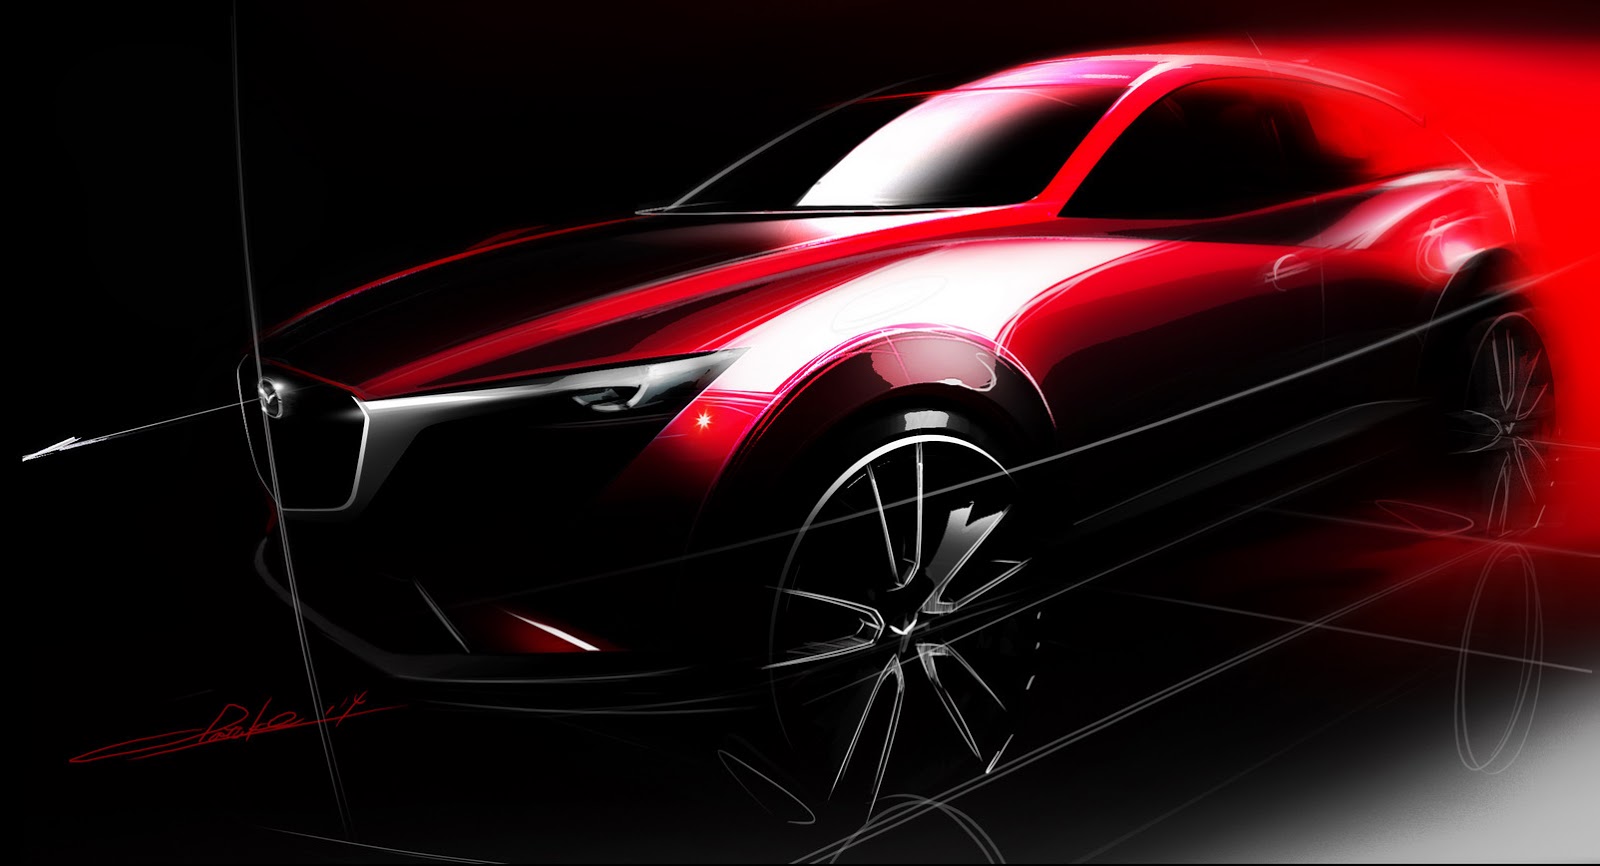 El Mazda CX-3 se presentará en el Salón de Los Angeles